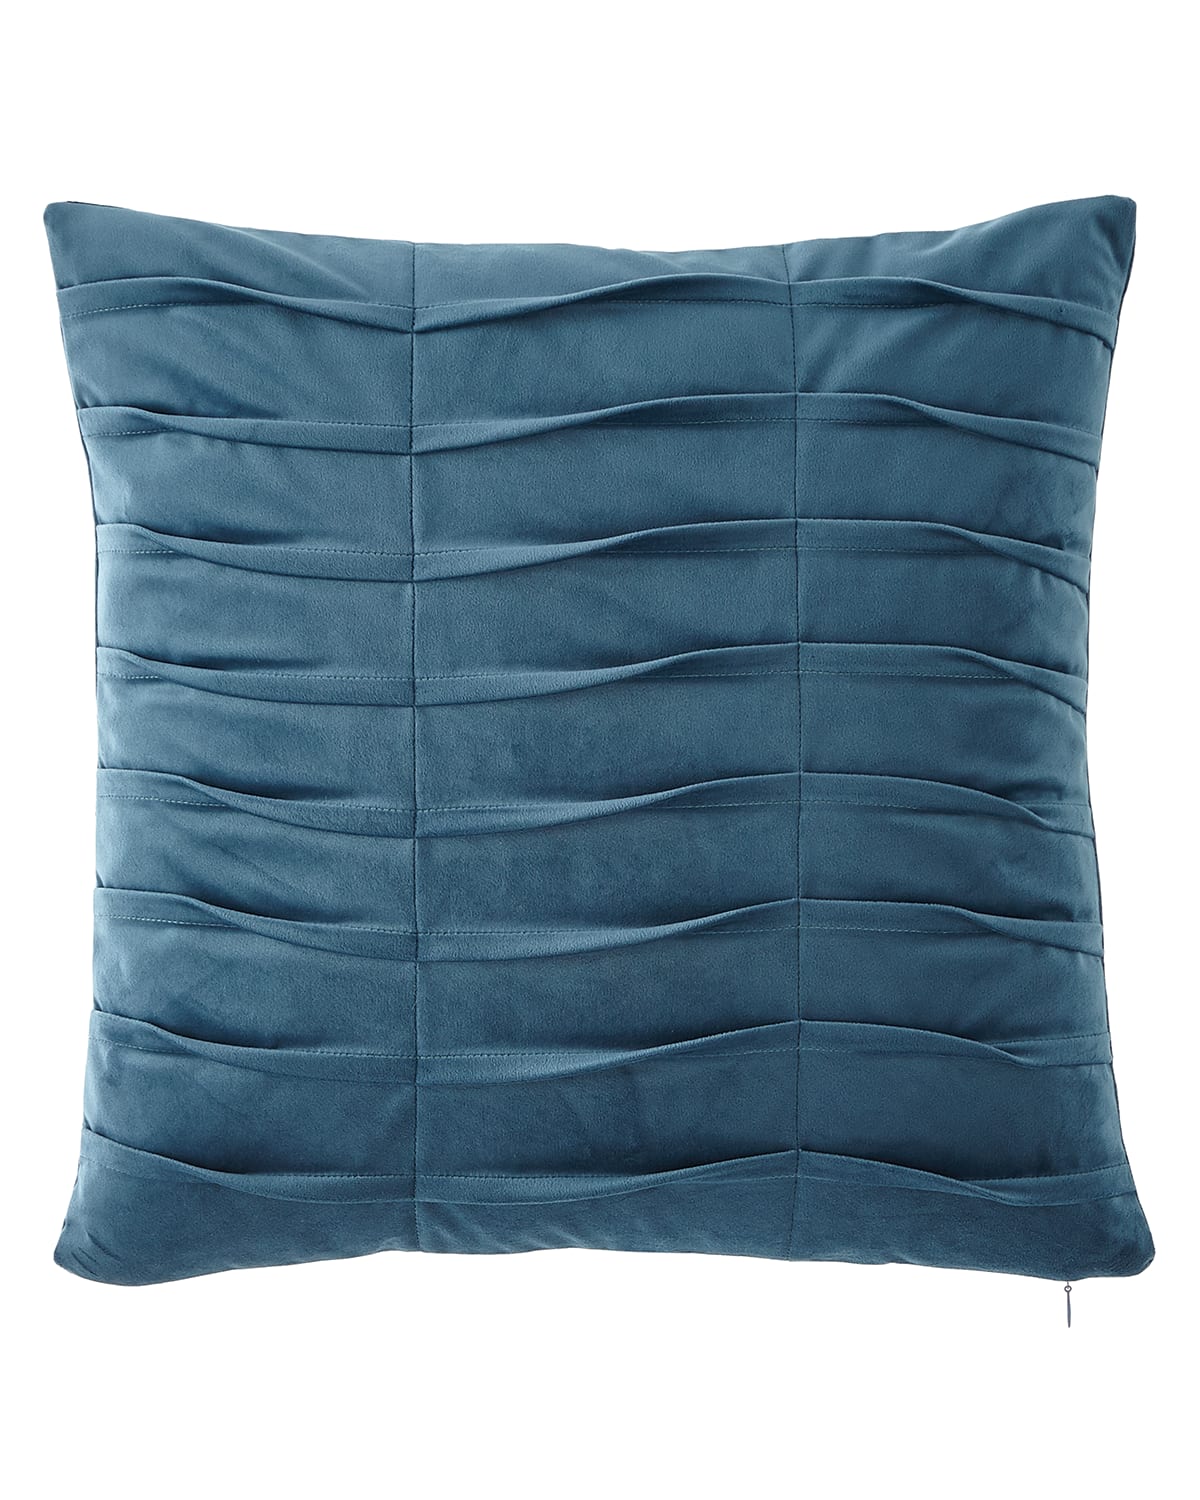 Image Dian Austin Couture Home Emporium Pleated Velvet Boutique Pillow, Teal